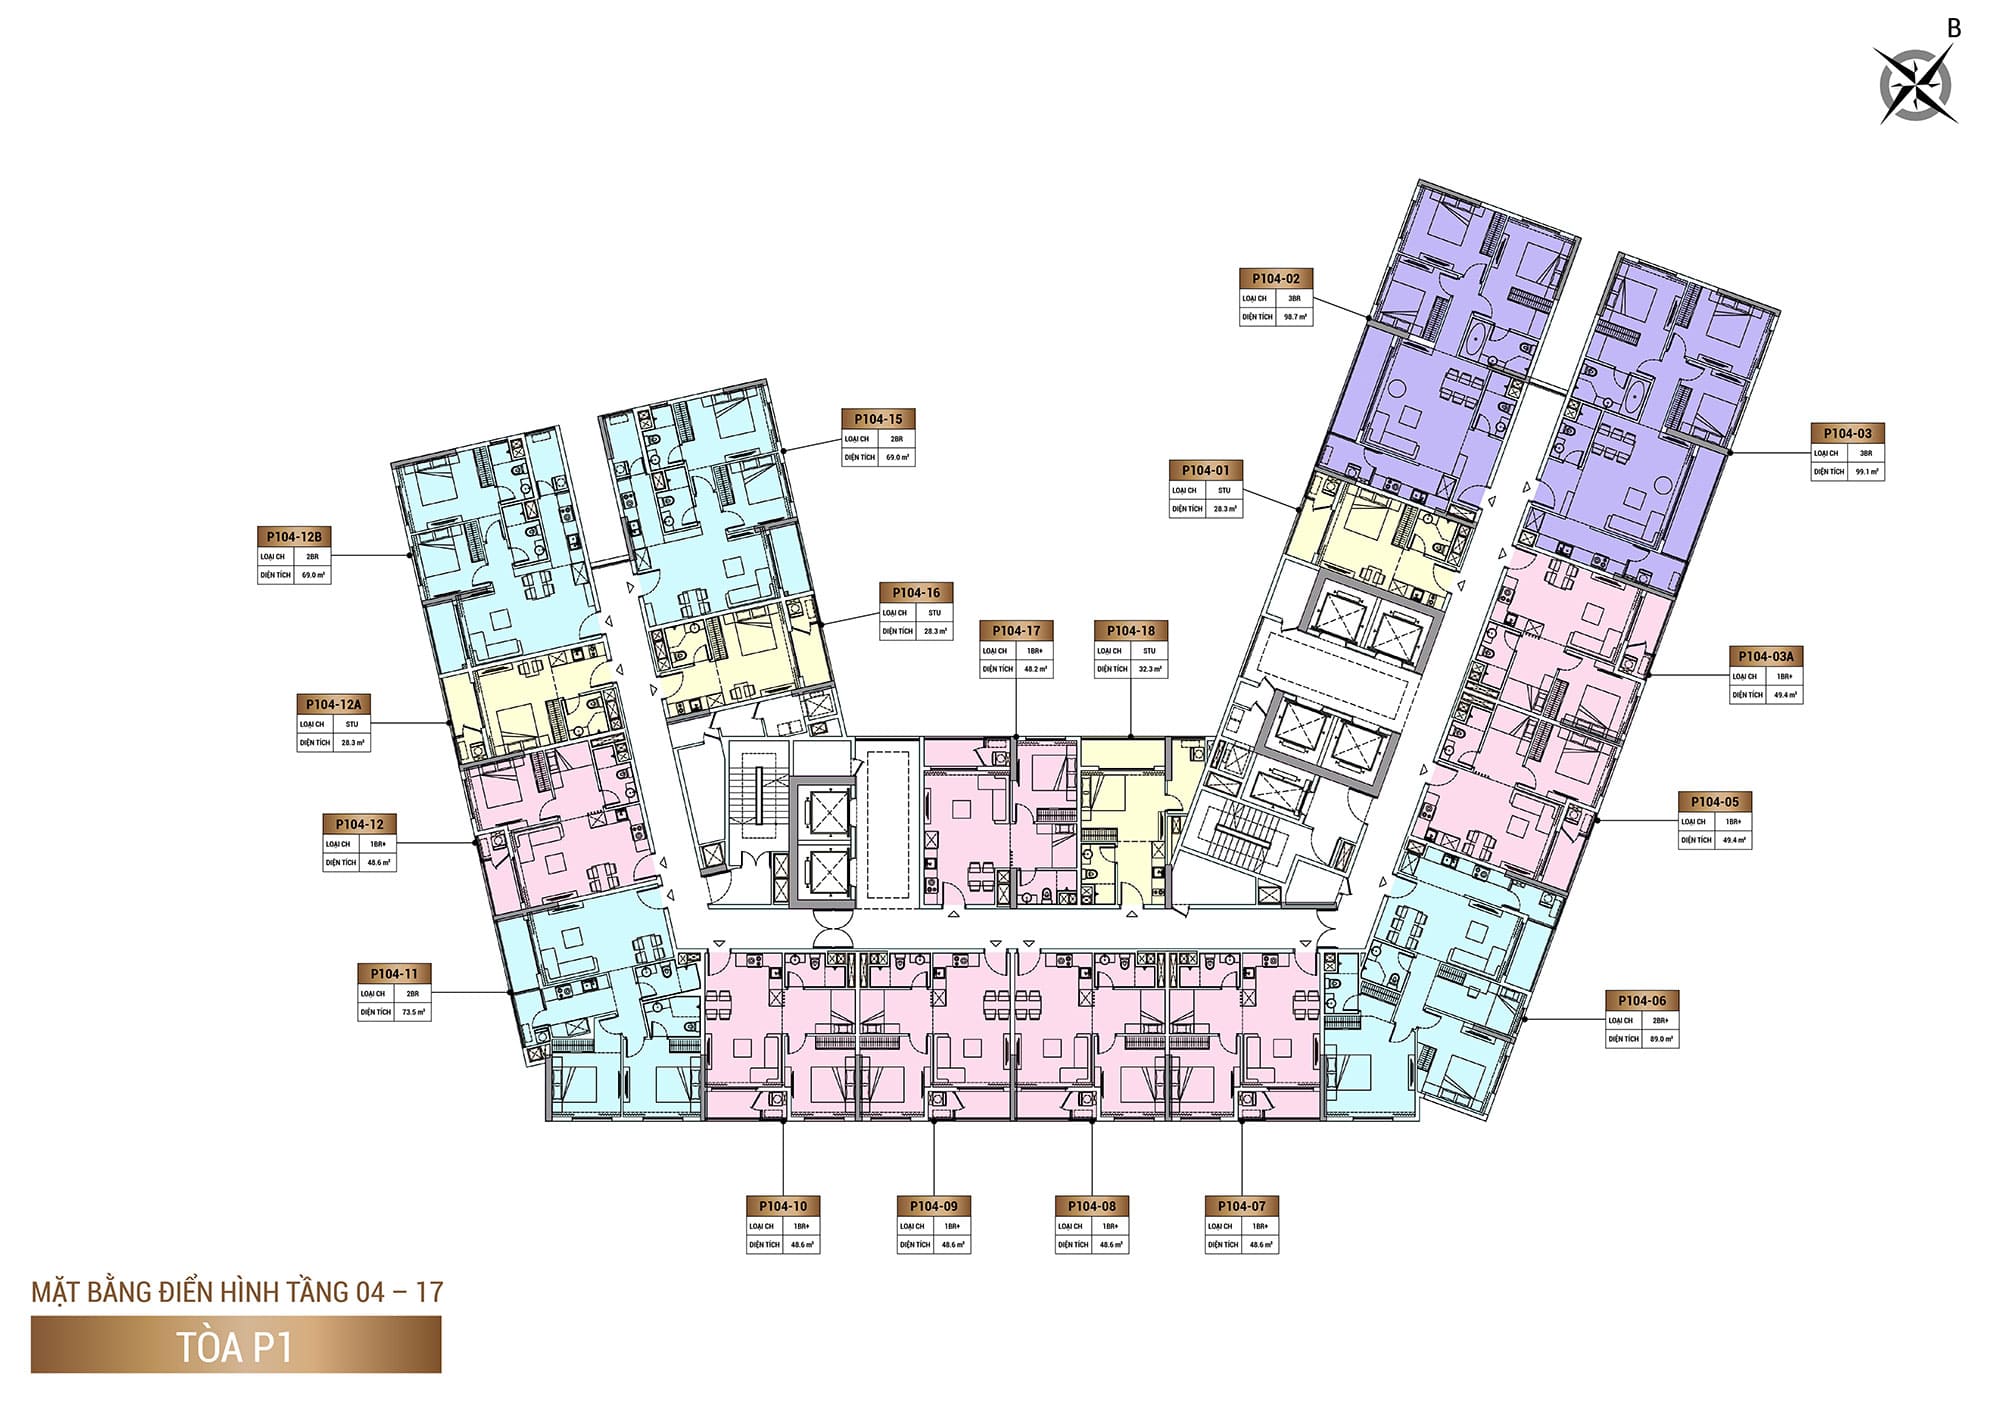 Mặt bằng Tầng 04 đến Tầng 17, Tòa P1, phân khu The Panoma dự án Sun Cosmo Residence.